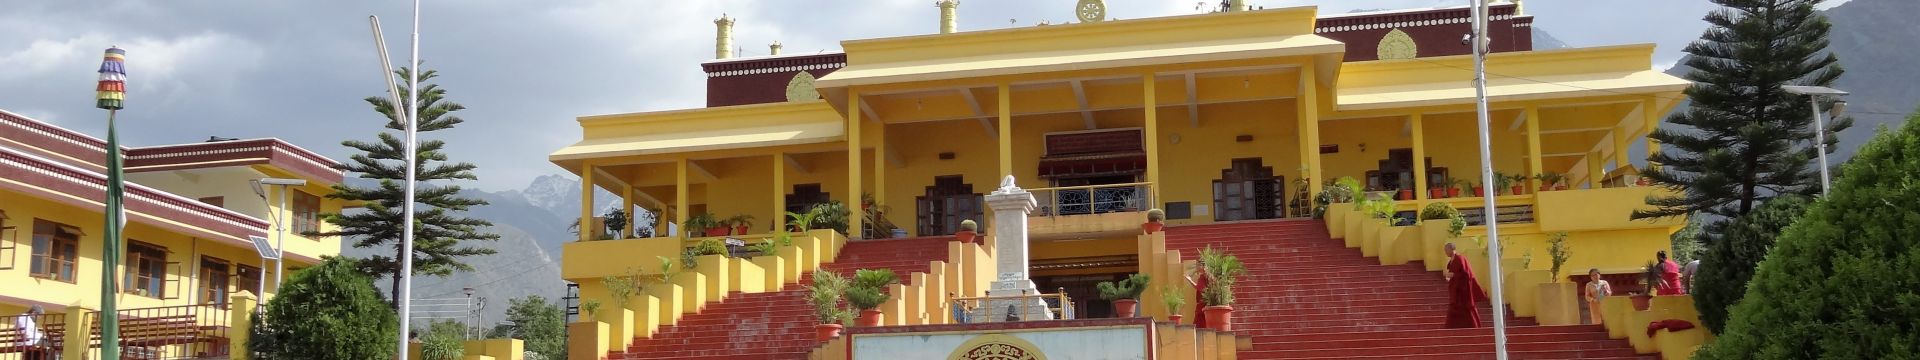 inde delhi dharamsala hindou